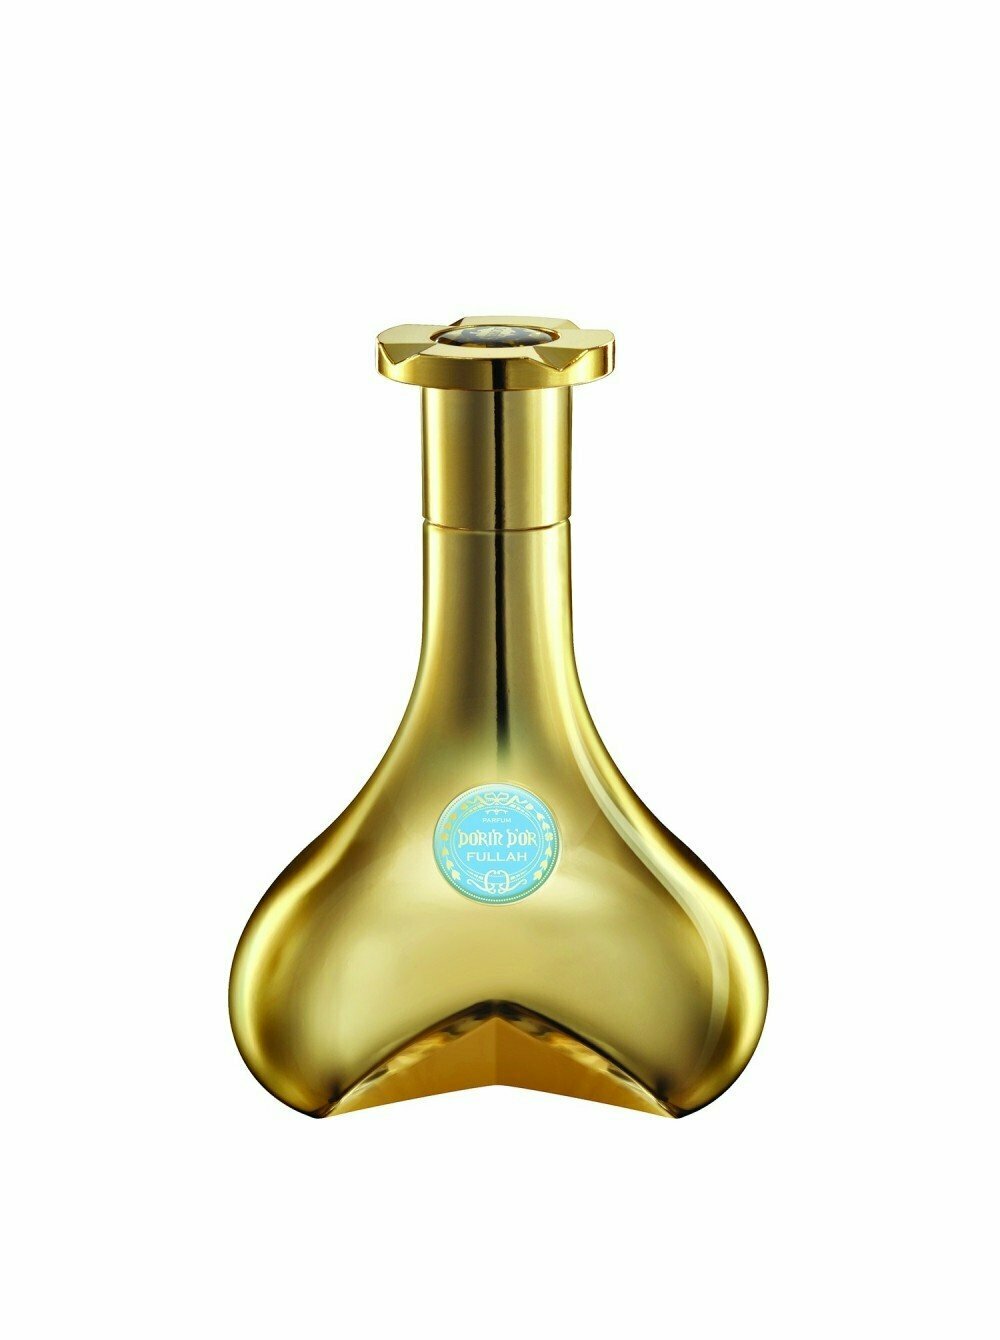 Dorin, D'Or Coffret 1 Parfum : Fullah, 80 мл, духи женские